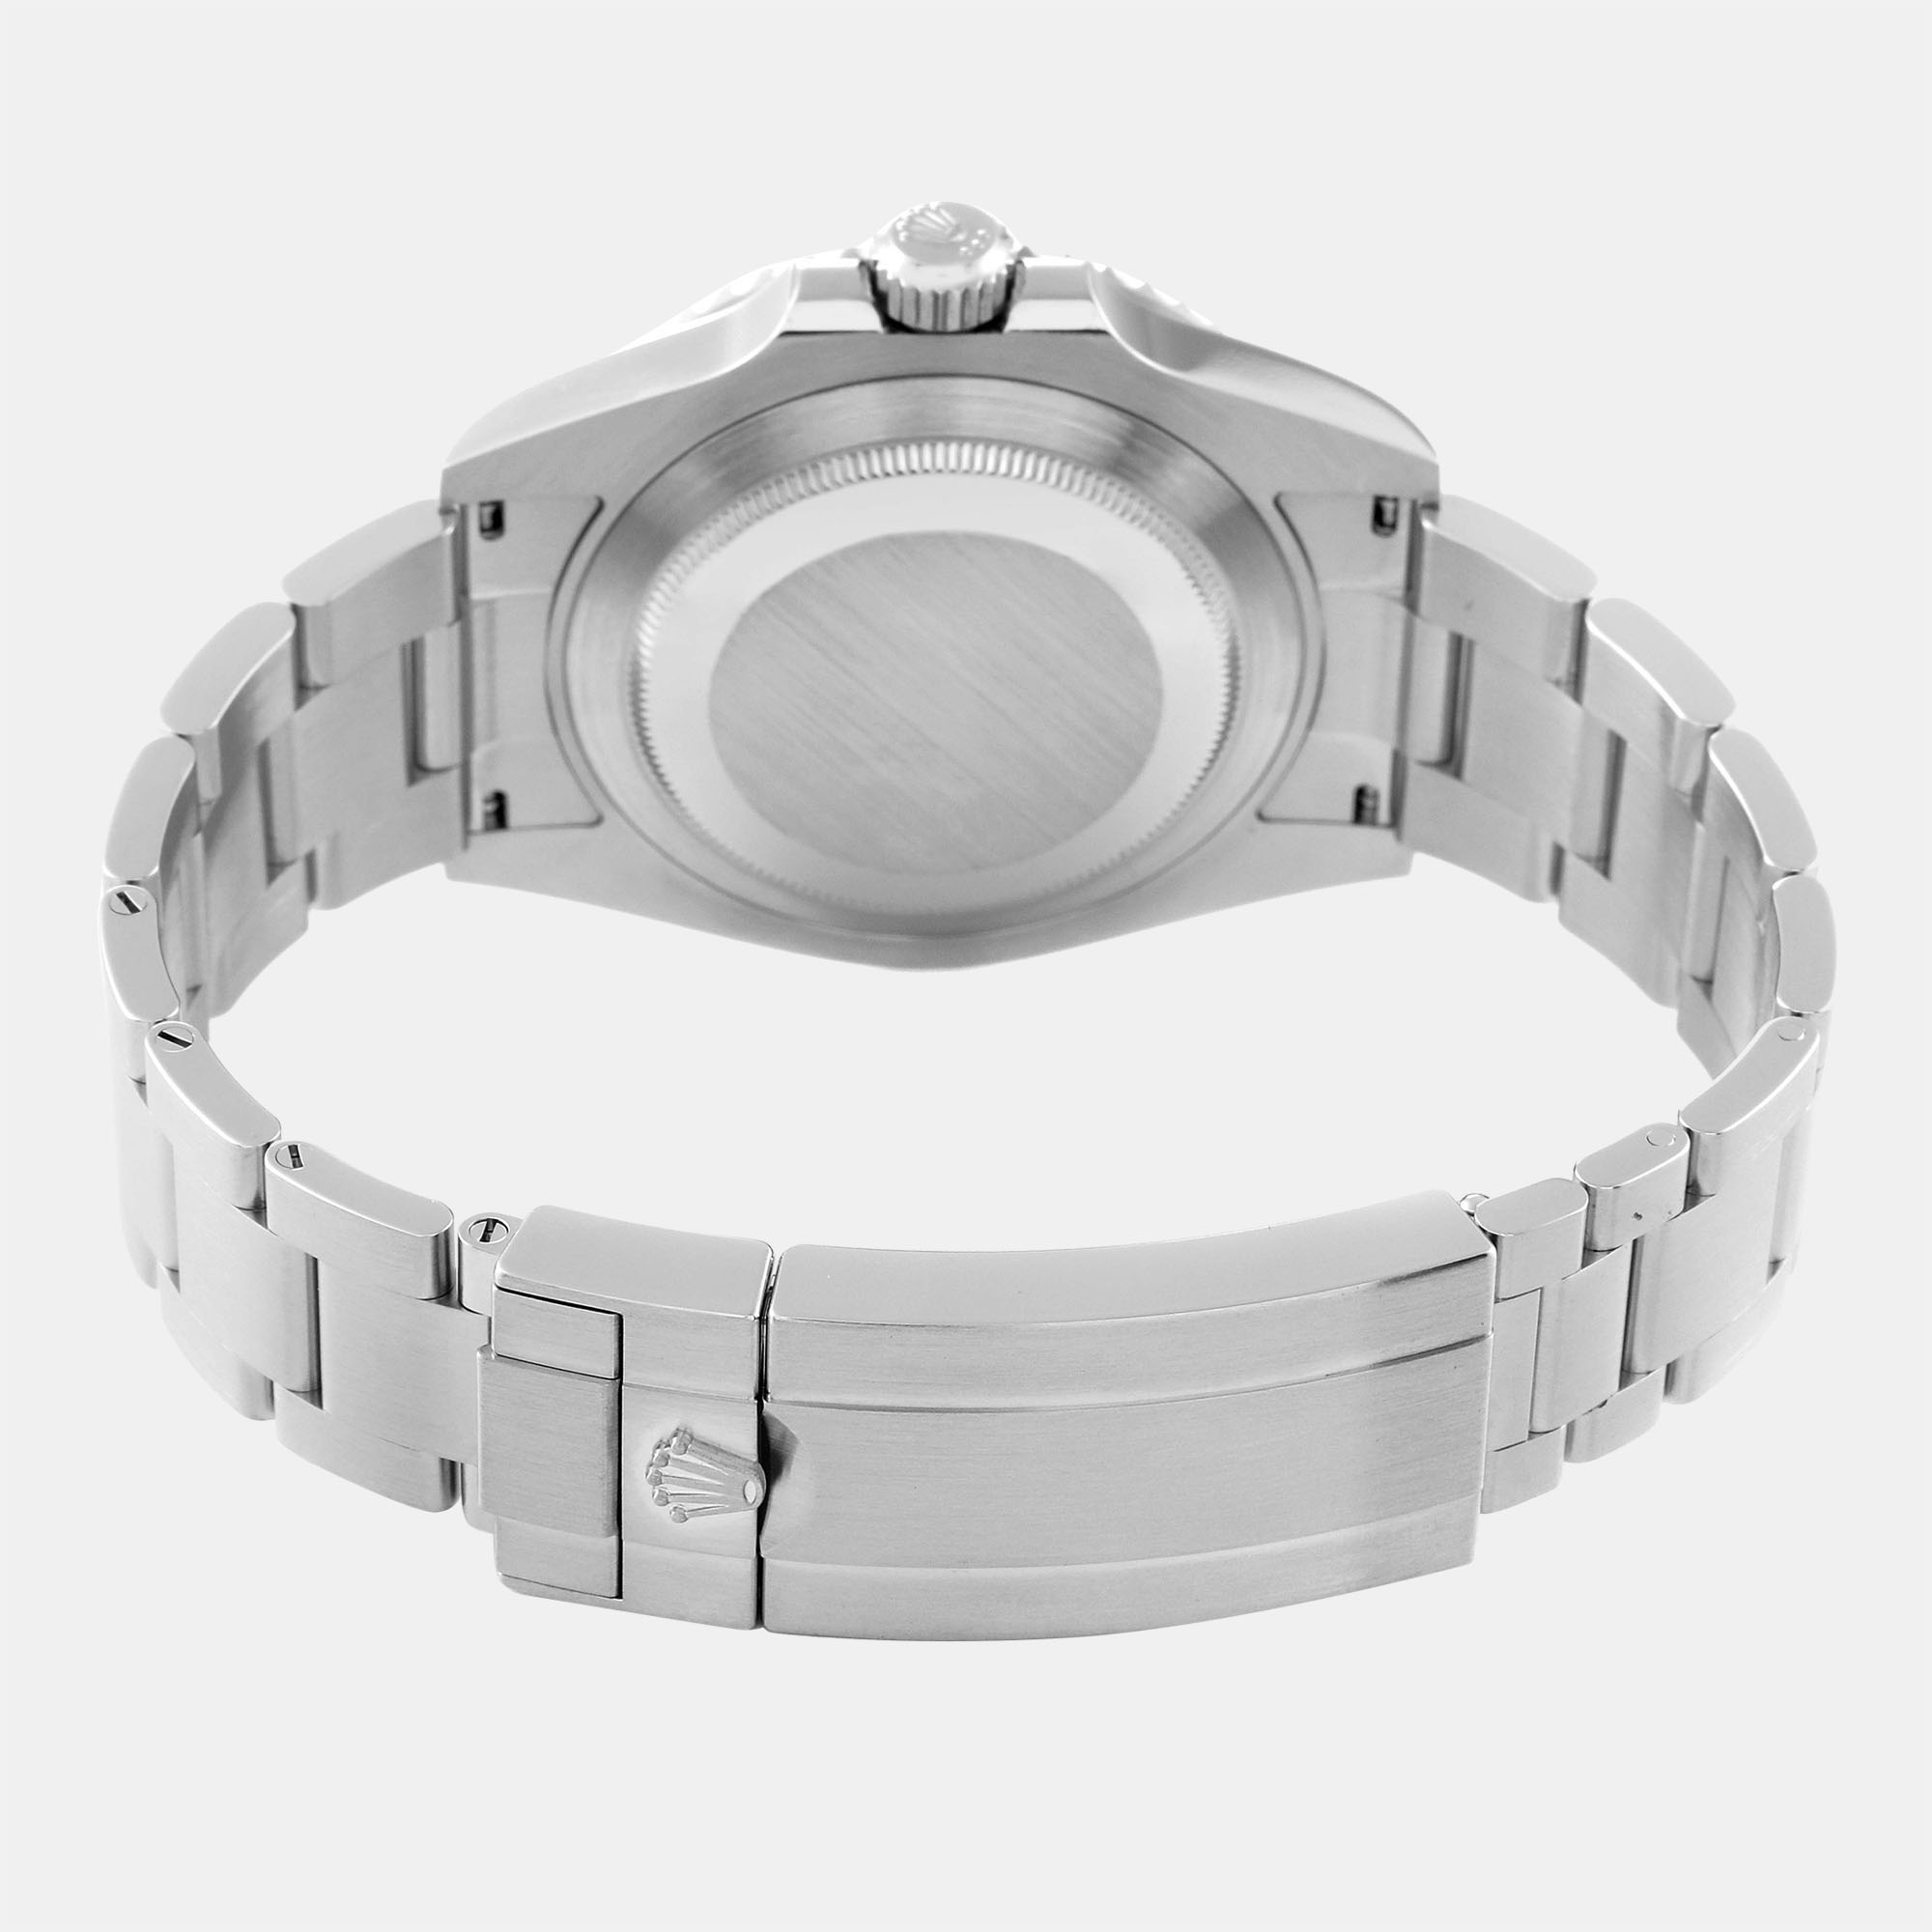 Rolex Submariner Non-Date Ceramic Bezel Steel Mens Watch 124060 41 Mm